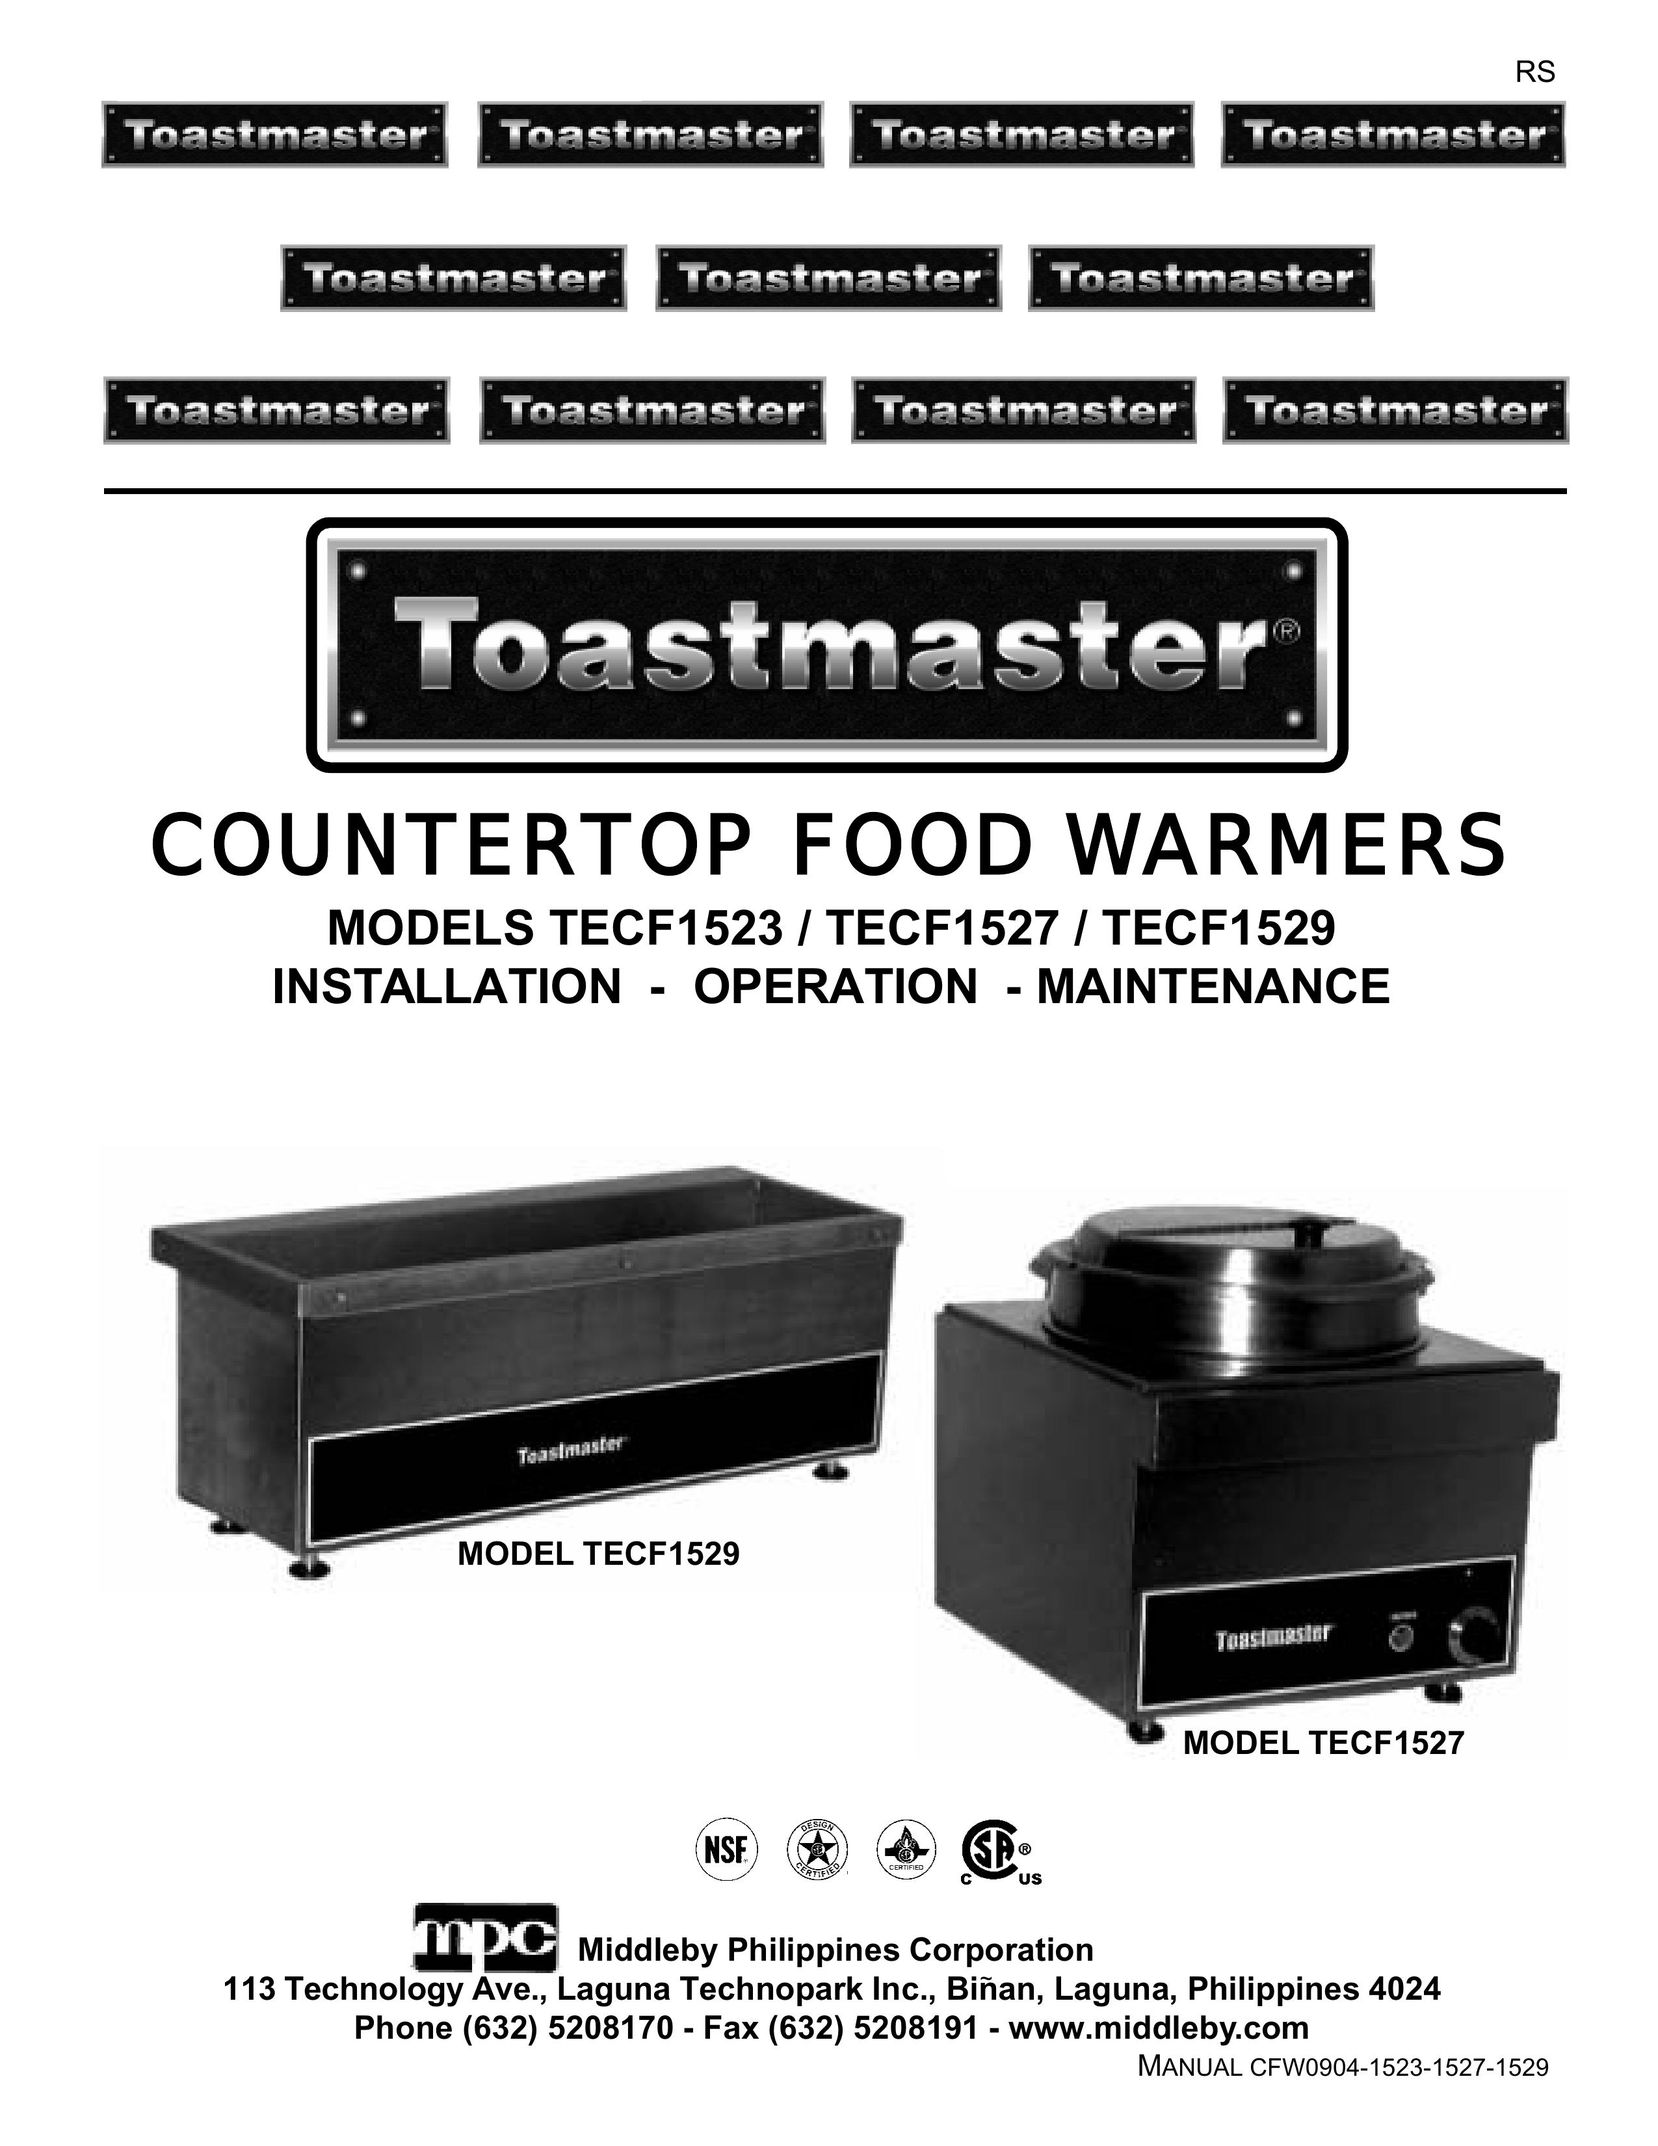 Toastmaster TECF1527 Food Warmer User Manual